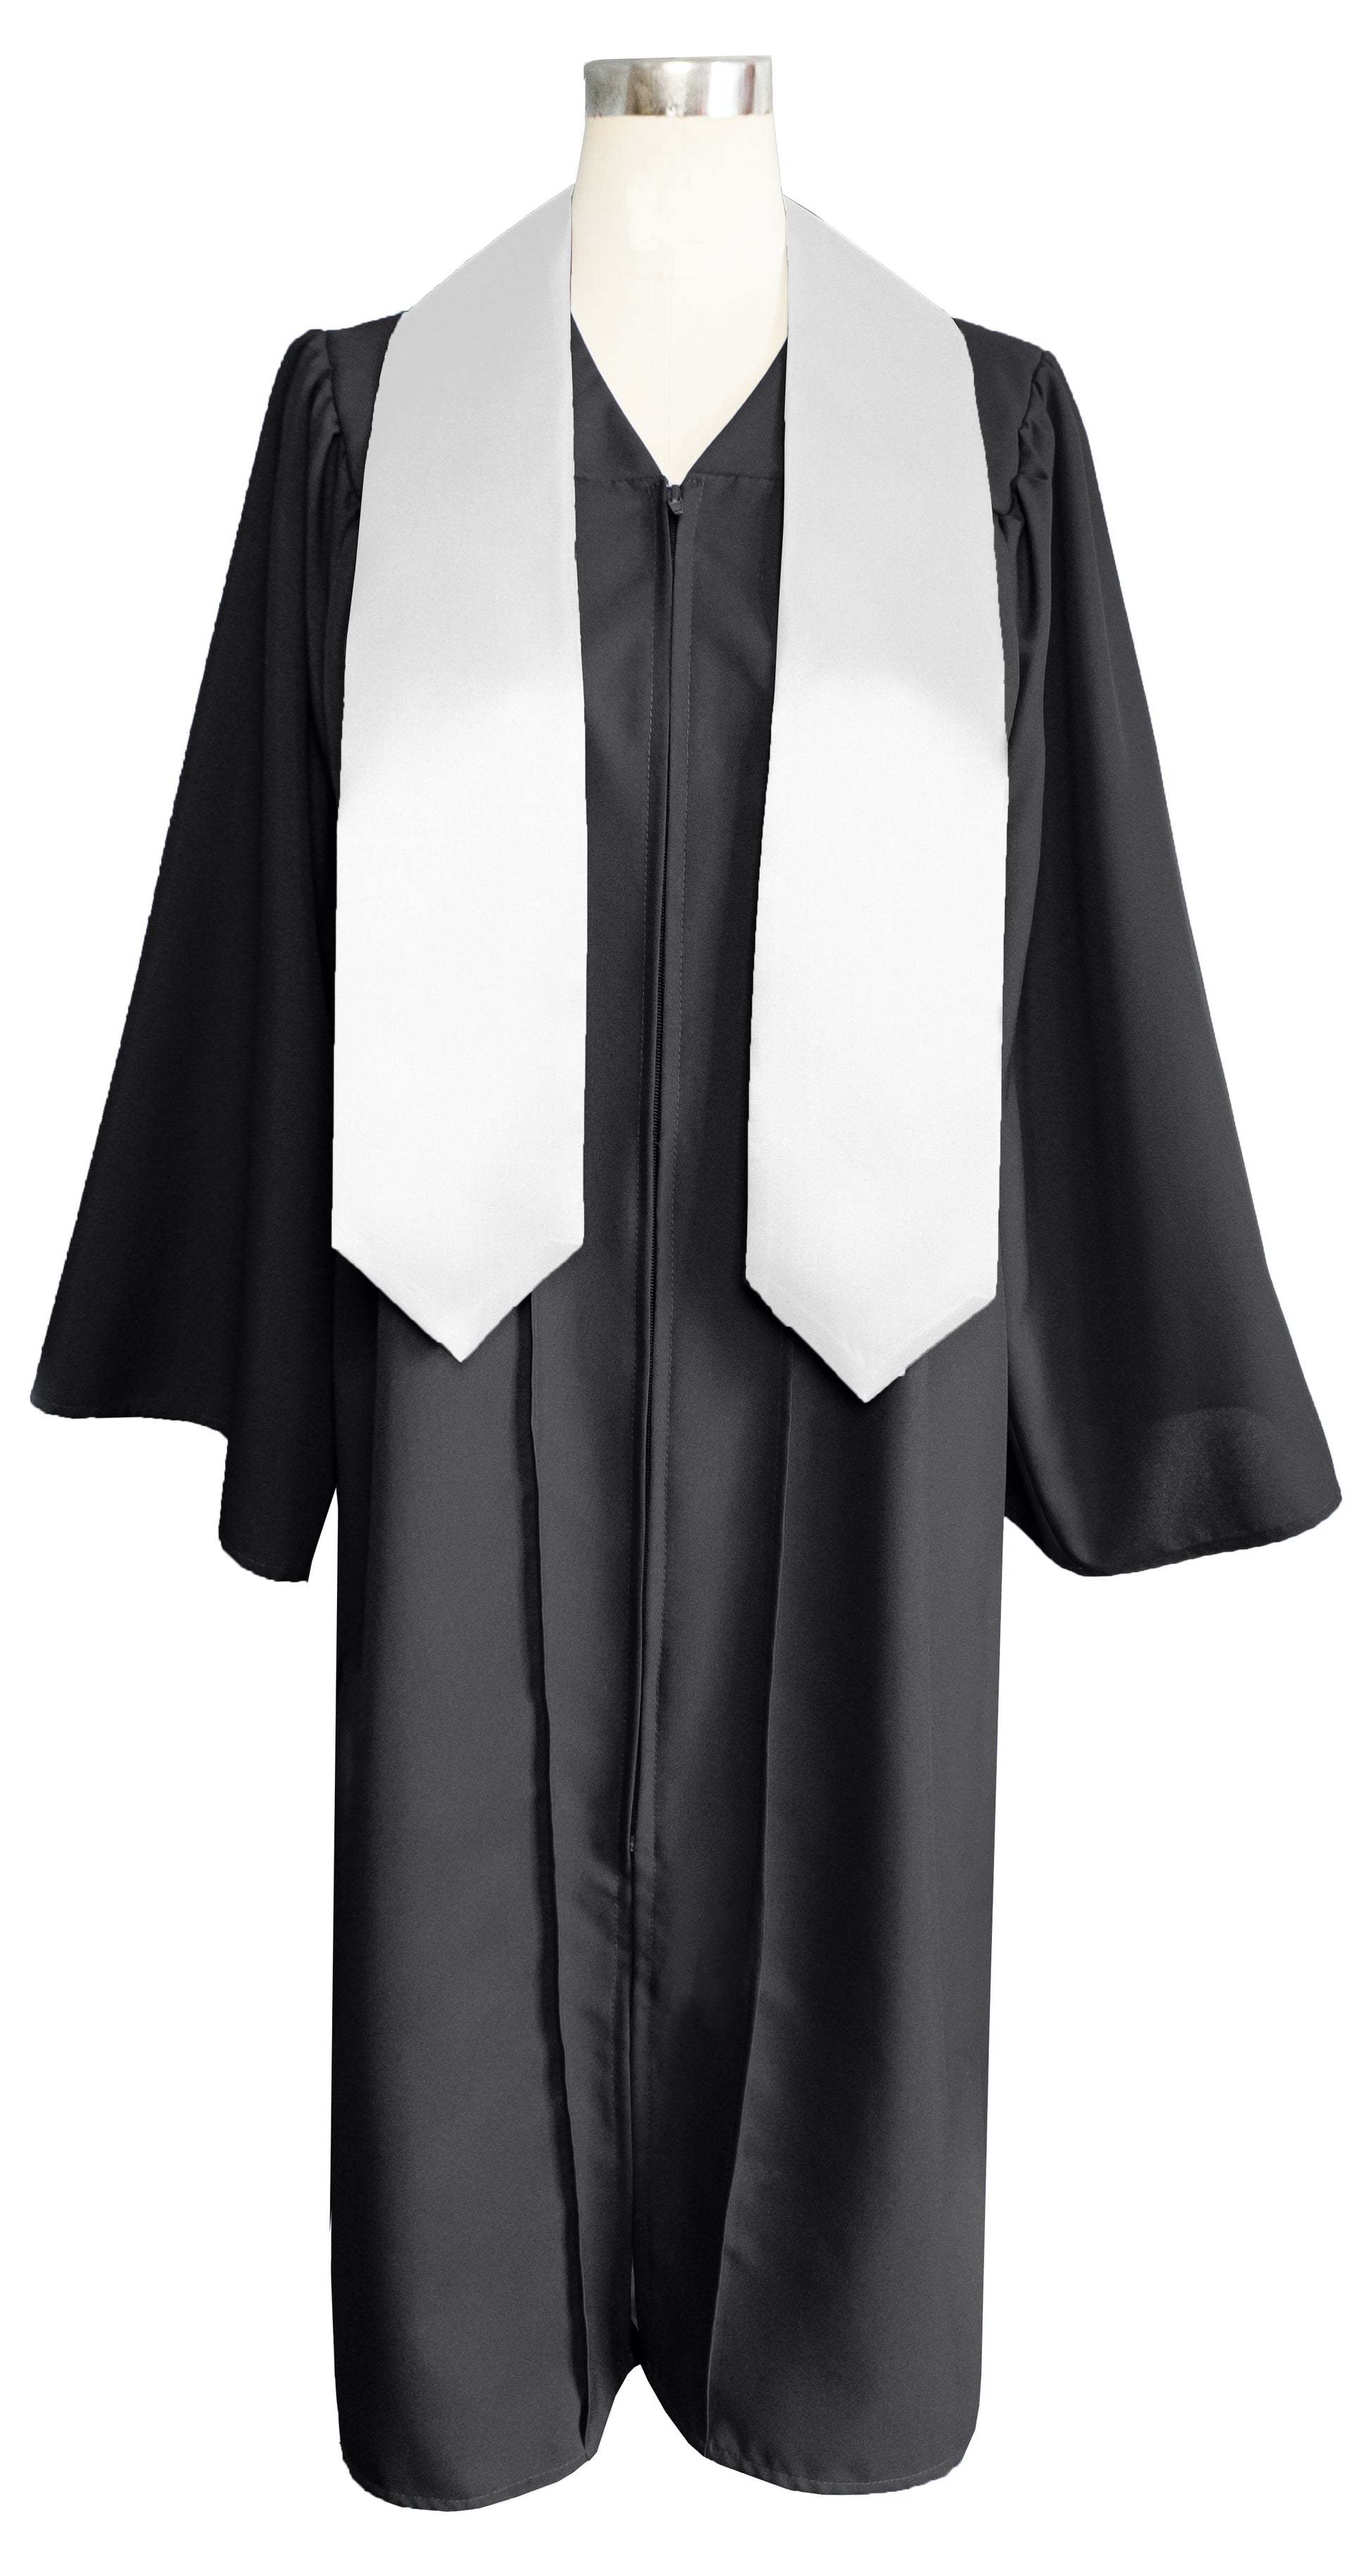 Adult Plain Graduation Stole 60” Unisex in Various Colors-CA graduation